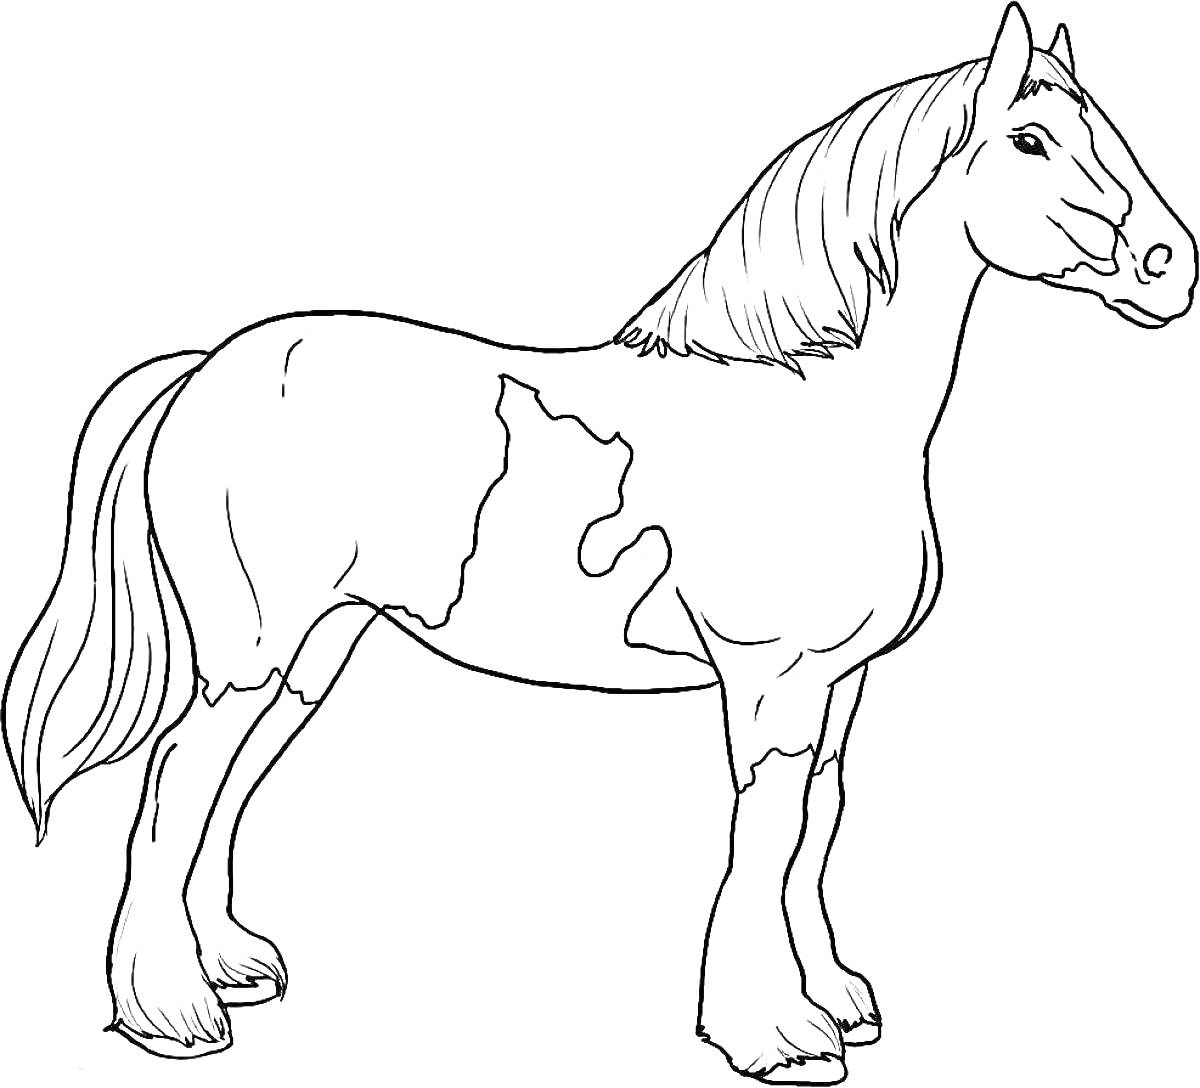 Раскраска Лошадь с пестрым окрасом, стоящая боком